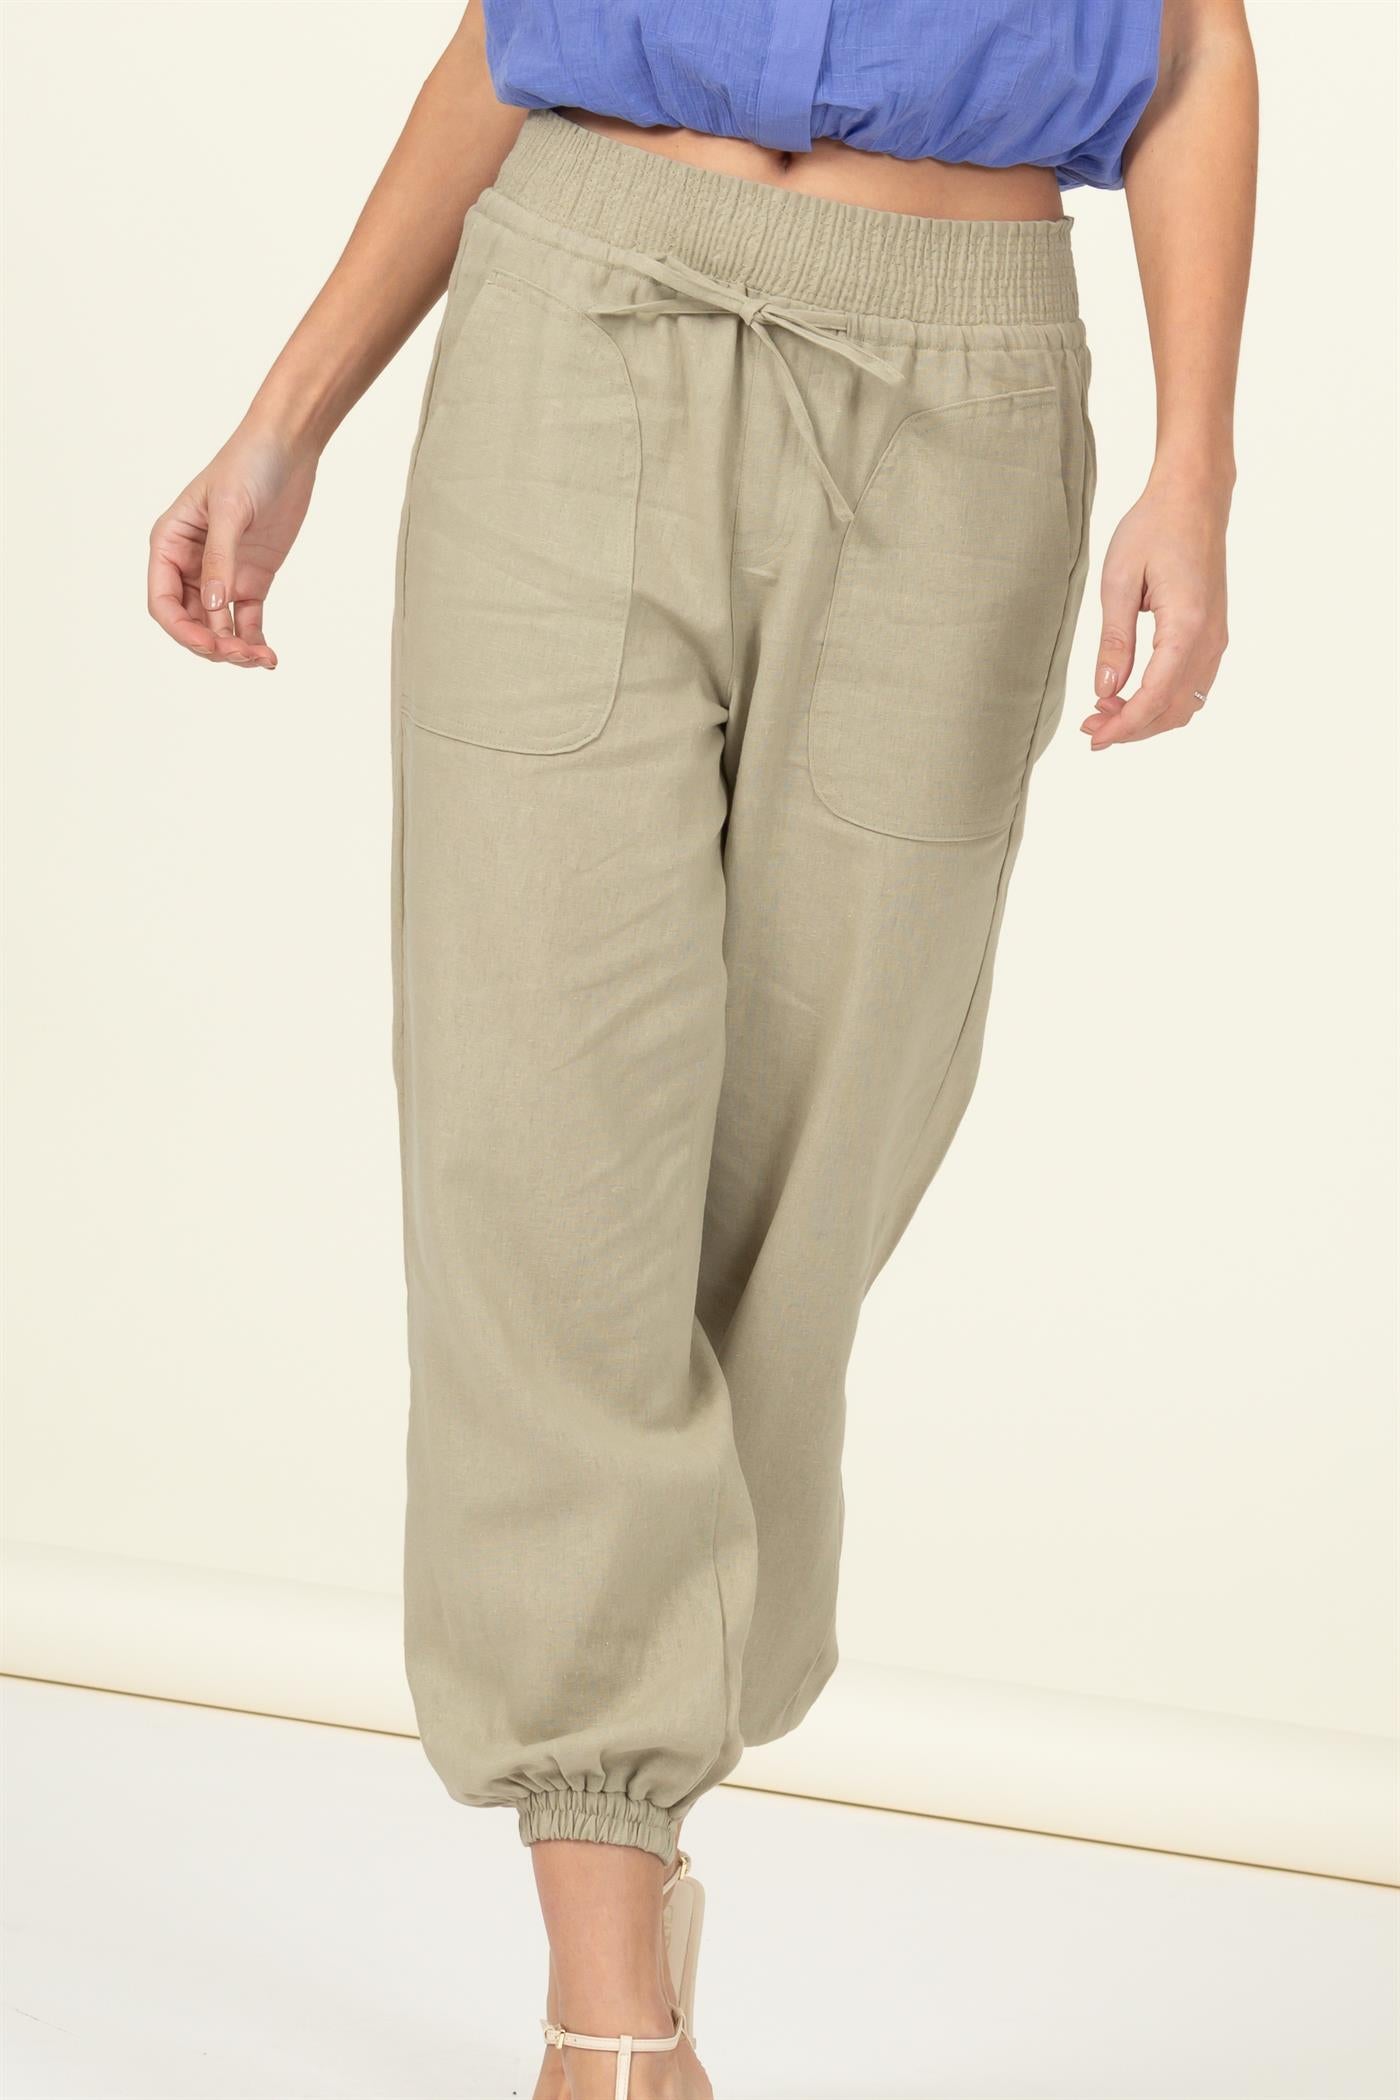 High waisted linen blend pants